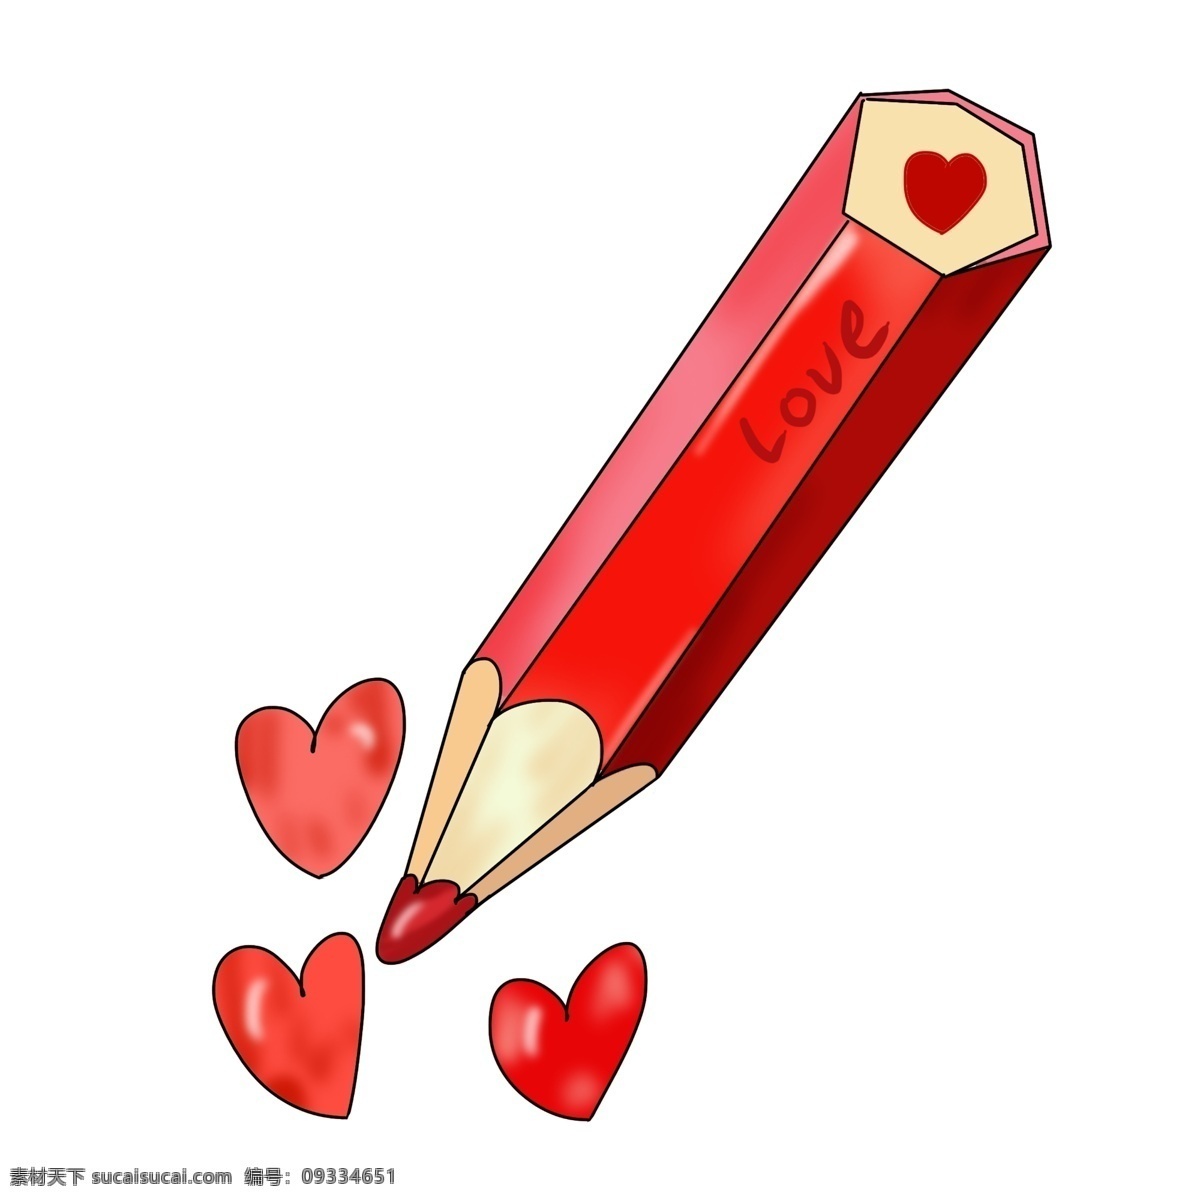 爱情 红色 铅笔 插画 红色的桃心 手绘铅笔 卡通铅笔 可爱的铅笔 爱情铅笔 漂亮的铅笔 红色的铅笔